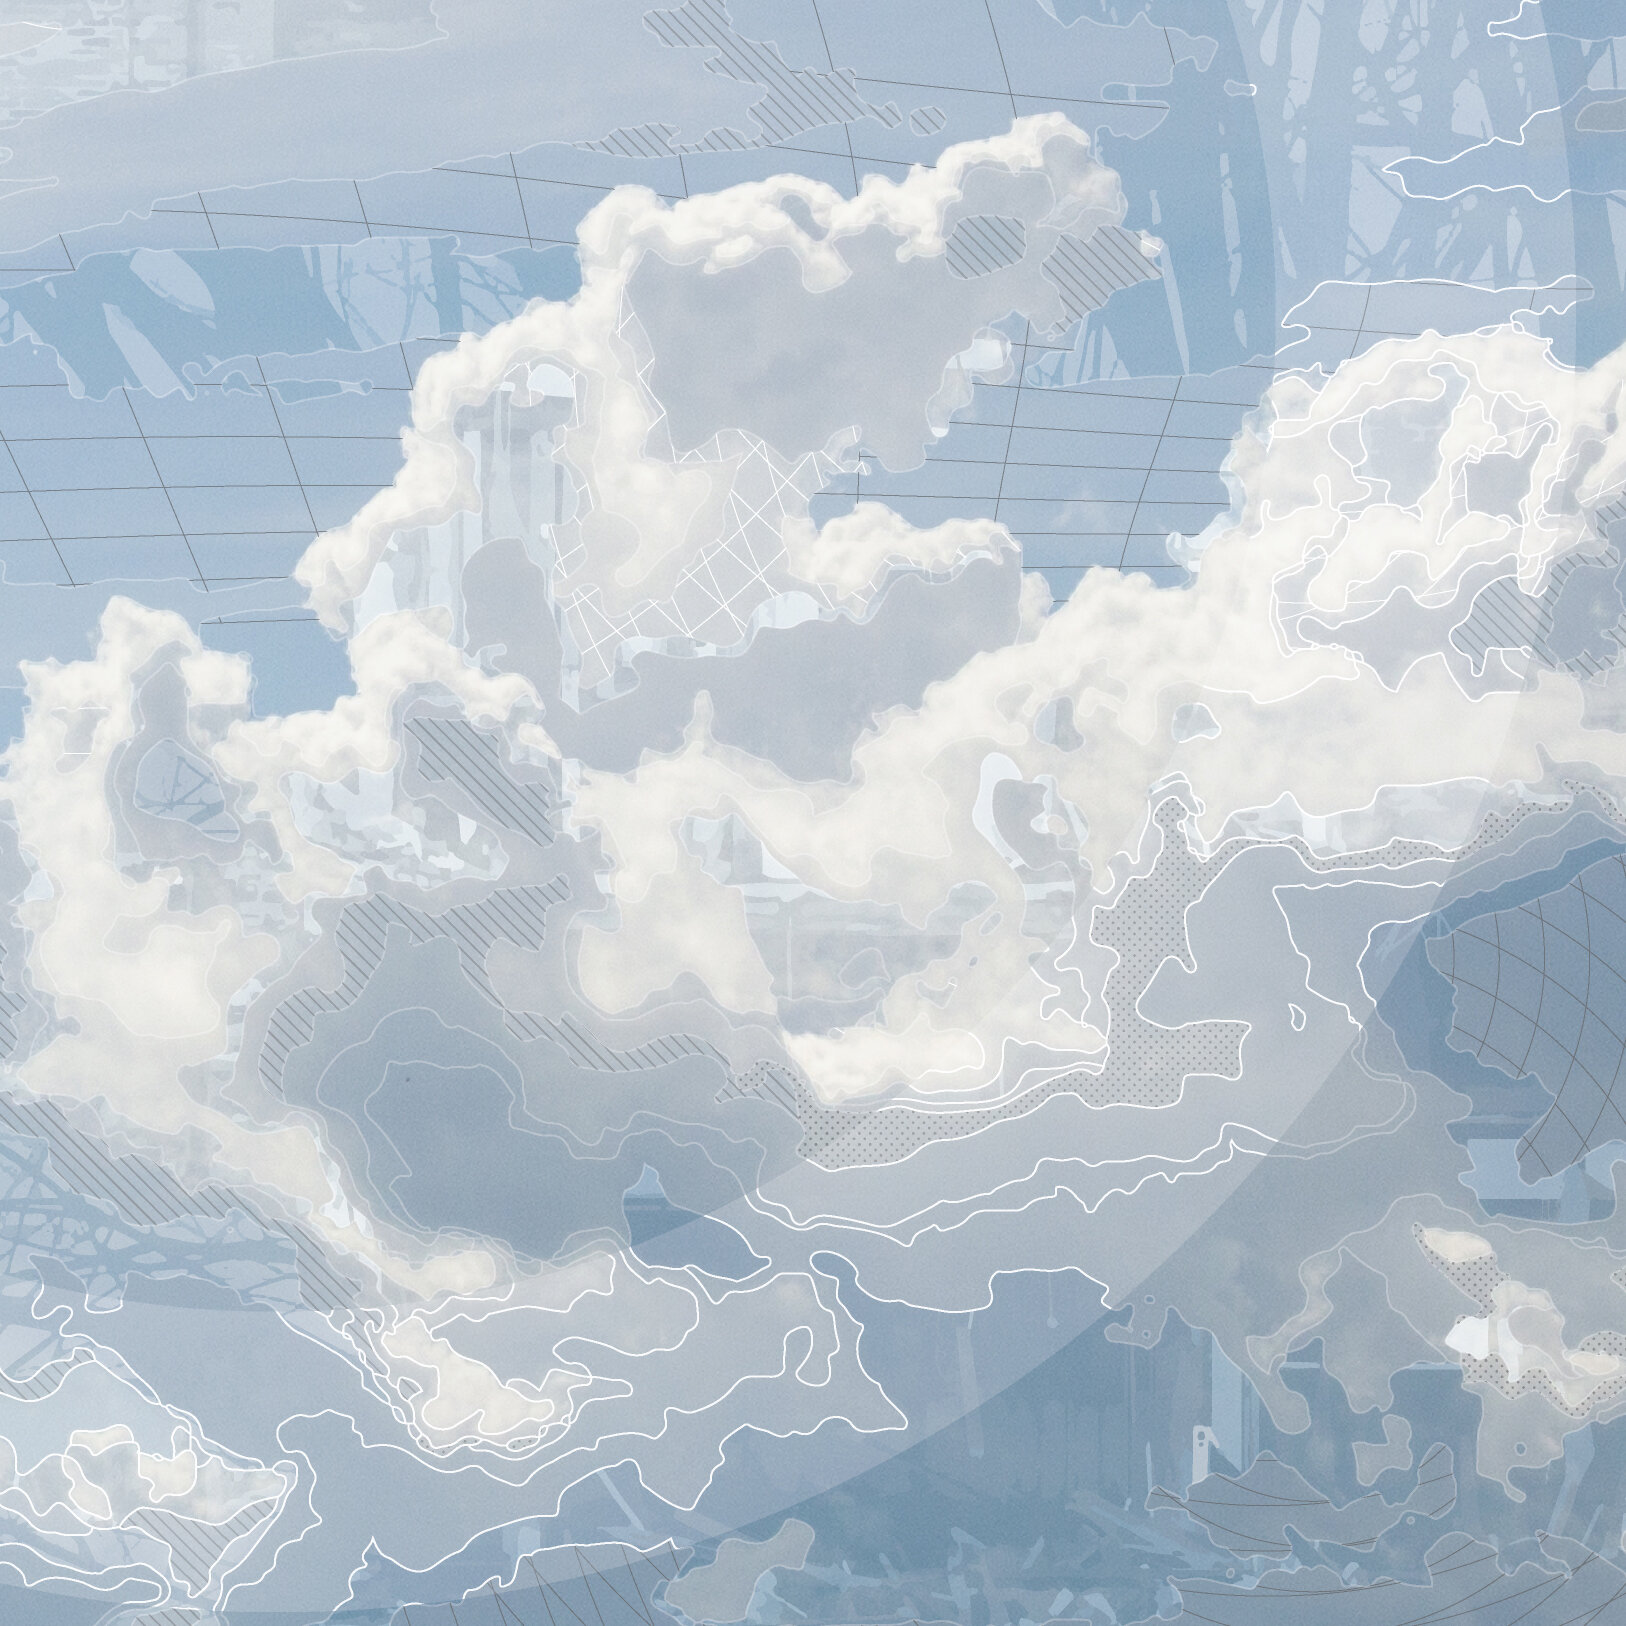 CloudPatterns3-DetailA.jpg